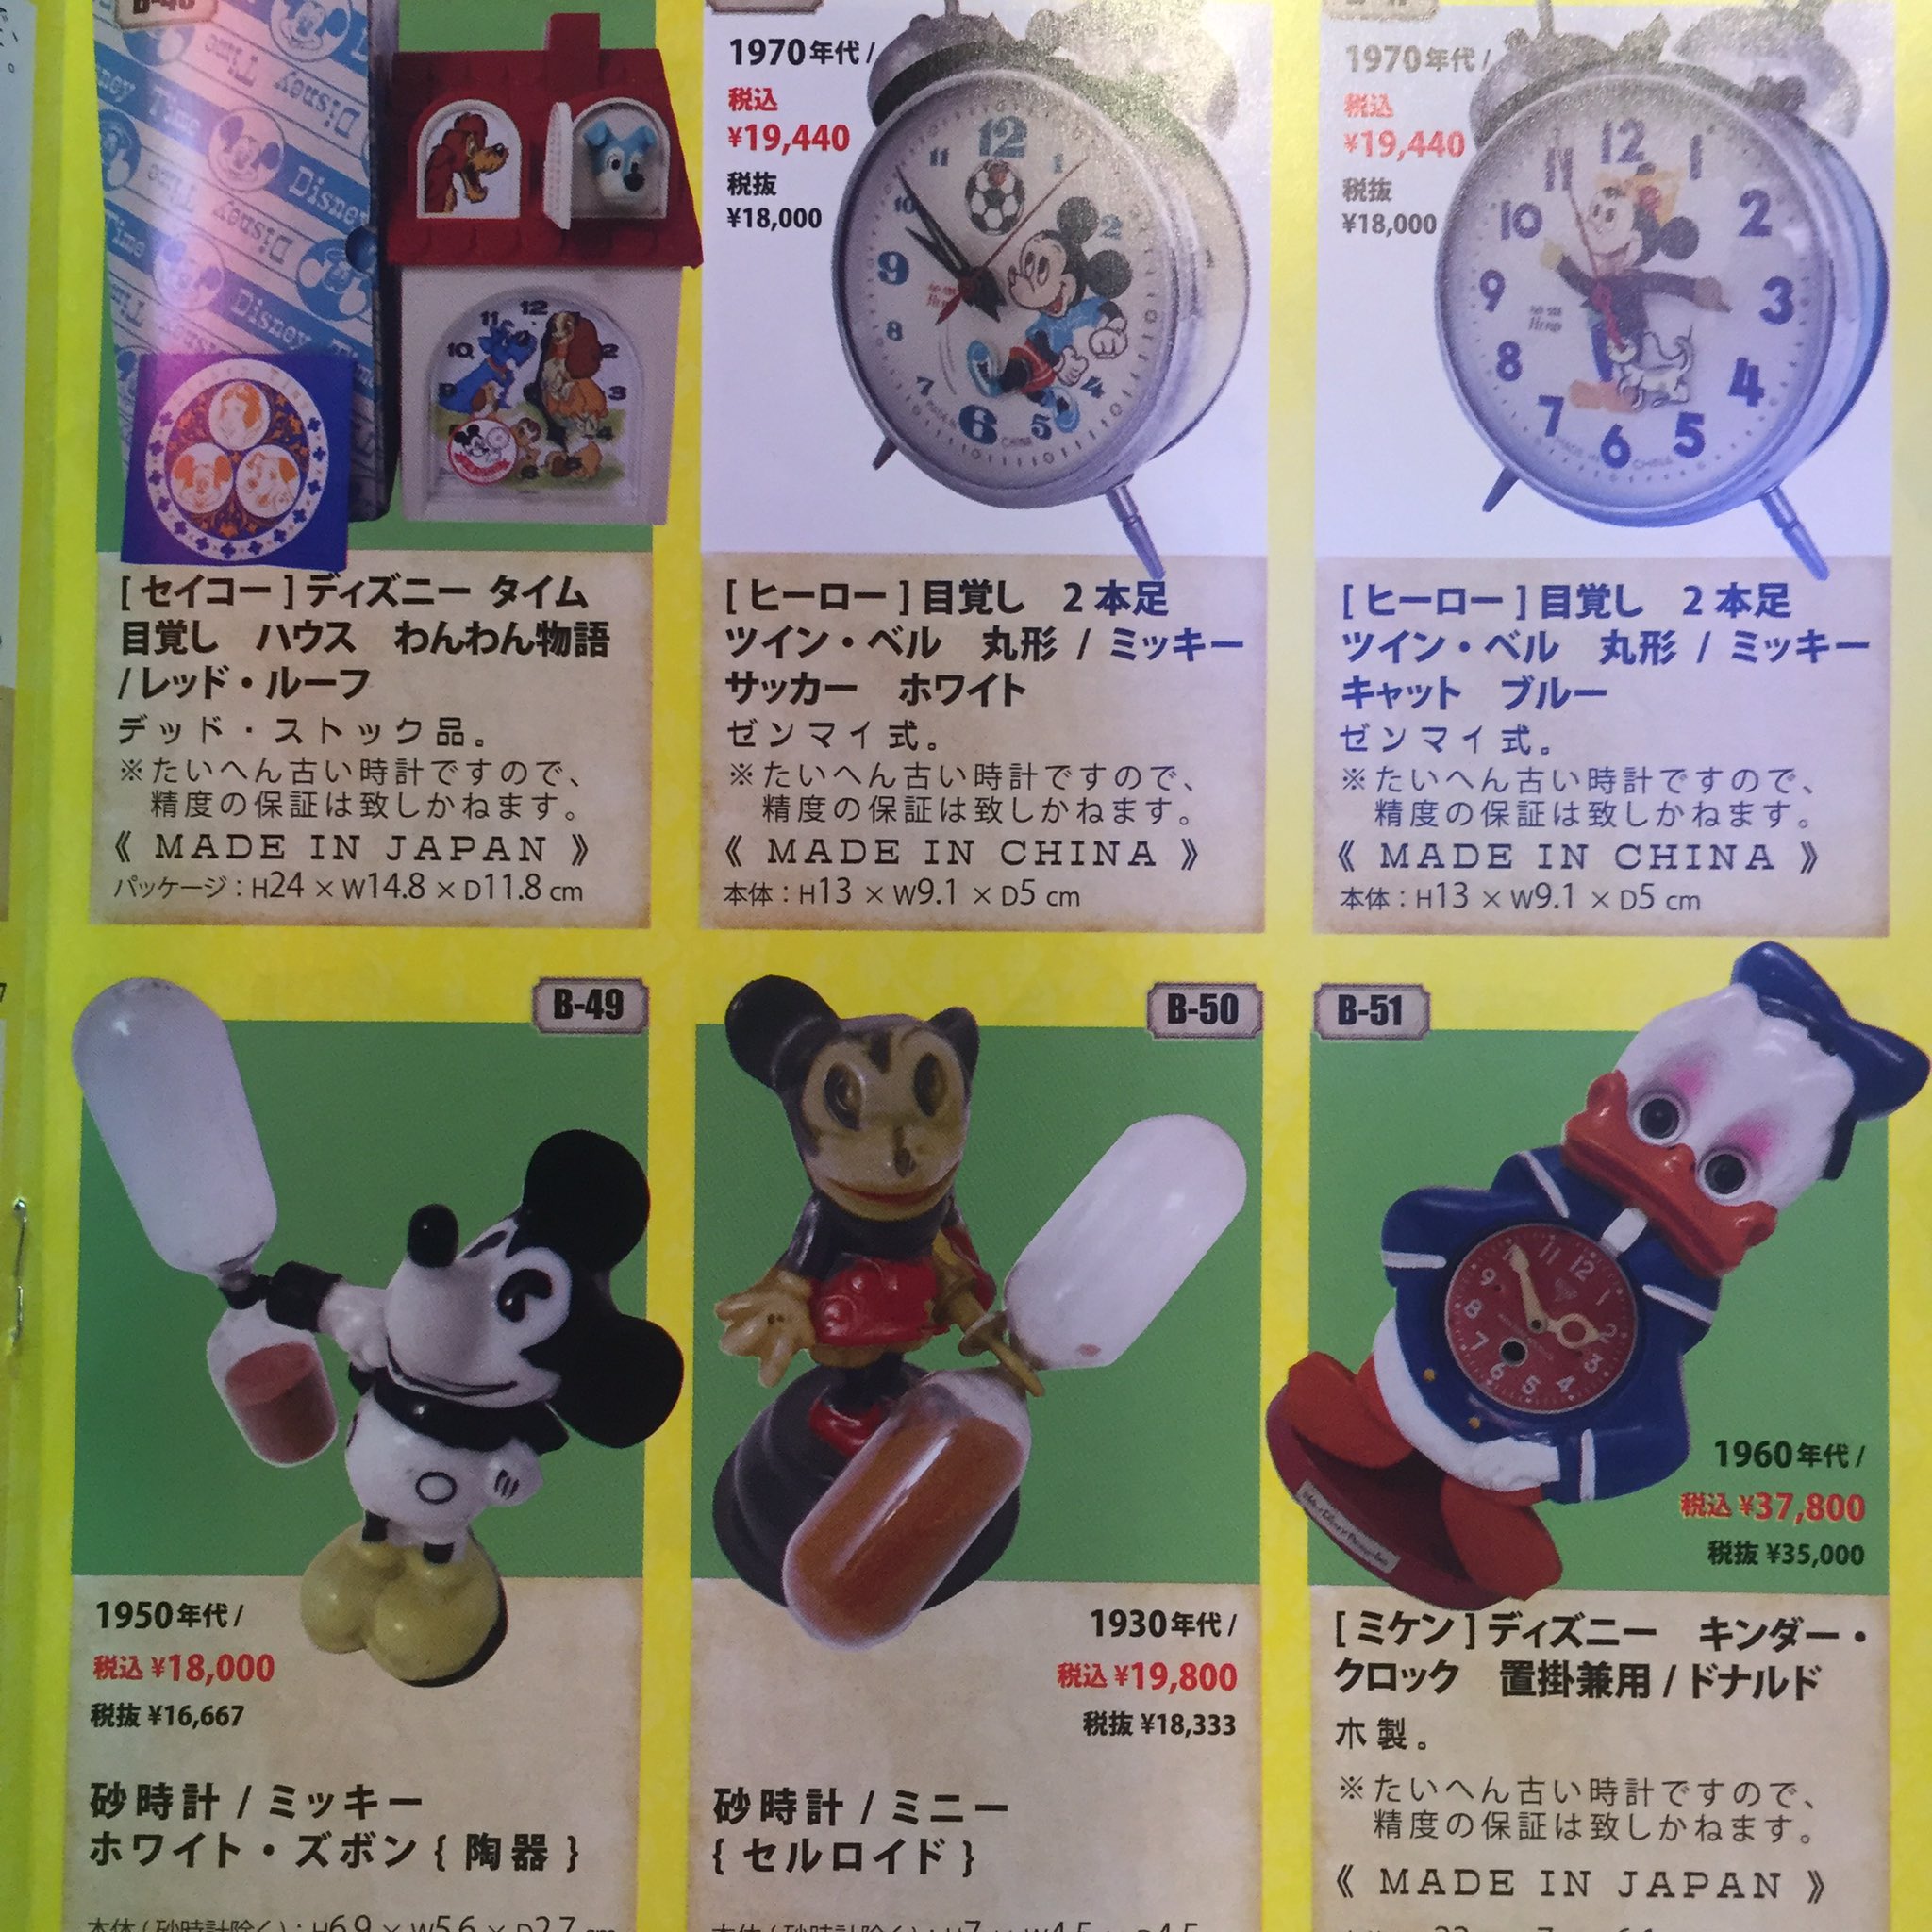 アンティークマイク アメリカ村本店 さんのツイート マイクインターナショナルには 1930年代頃からの古いディズニー商品が多数ございます 世界初のミッキーマウスの時計を作ったインガソウル社のポケットウォッチやセイコーの日本製目覚まし時計など珍しいものばかり